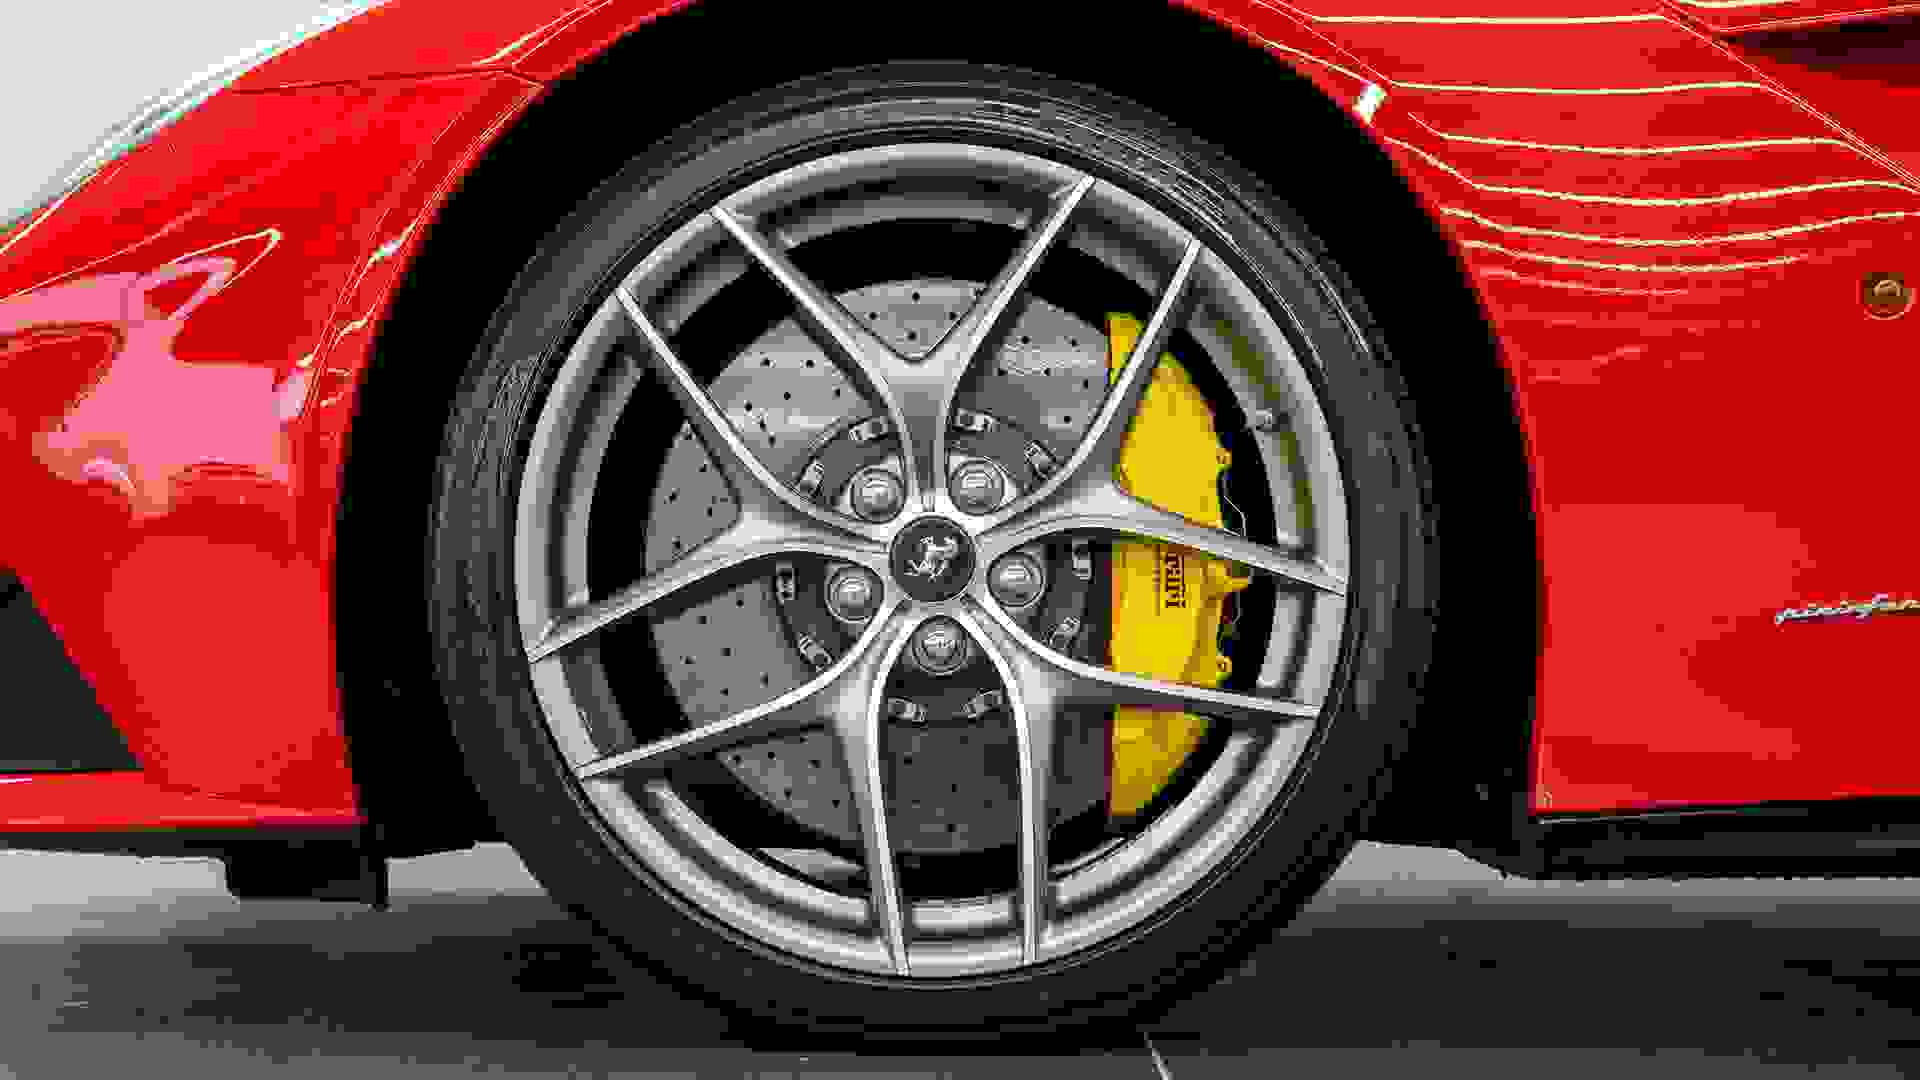 Ferrari F12 Photo 4f55904f-8901-4419-82d9-11cbad8f972b.jpg